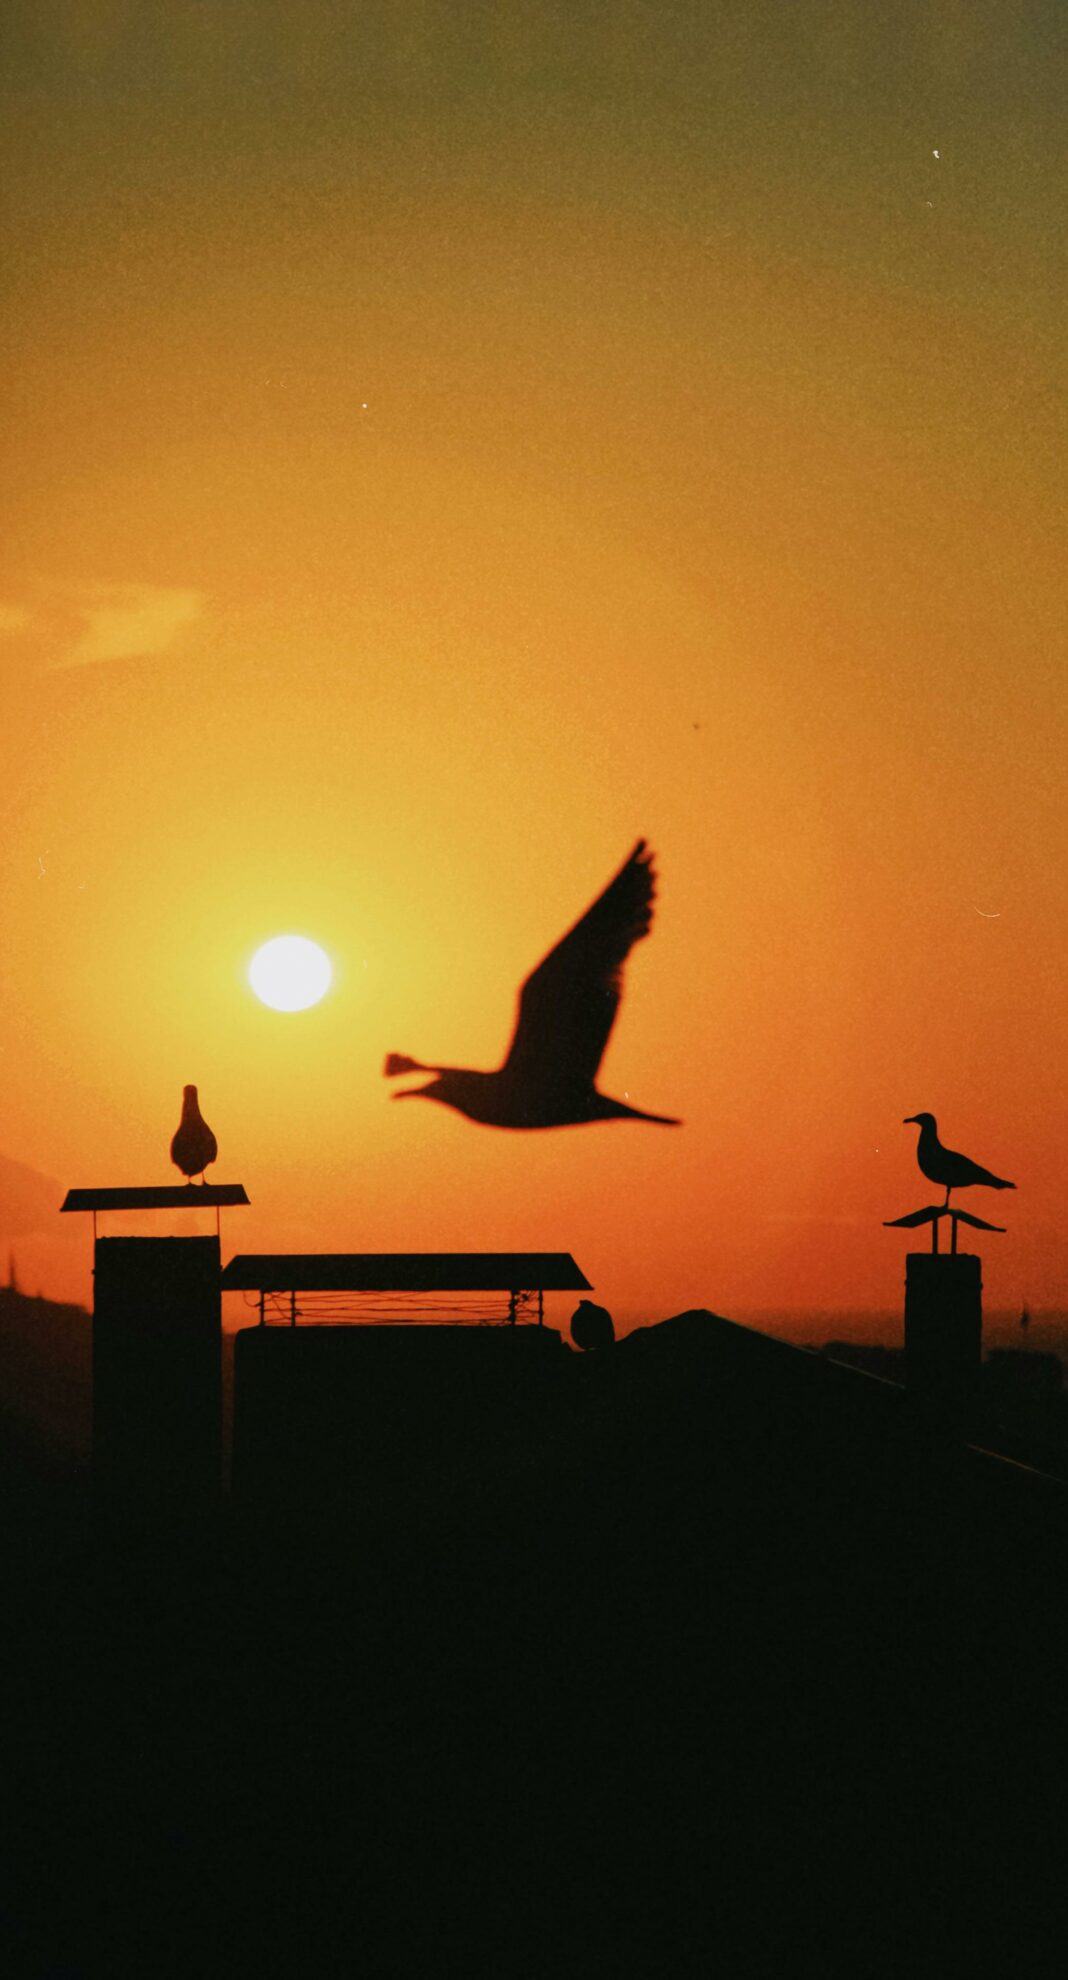 Le vol gracieux d'un oiseau, une métaphore céleste, symbolise la quête spirituelle dans l'article sur la Signification Spirituelle Profonde du Vol d'Oiseau.